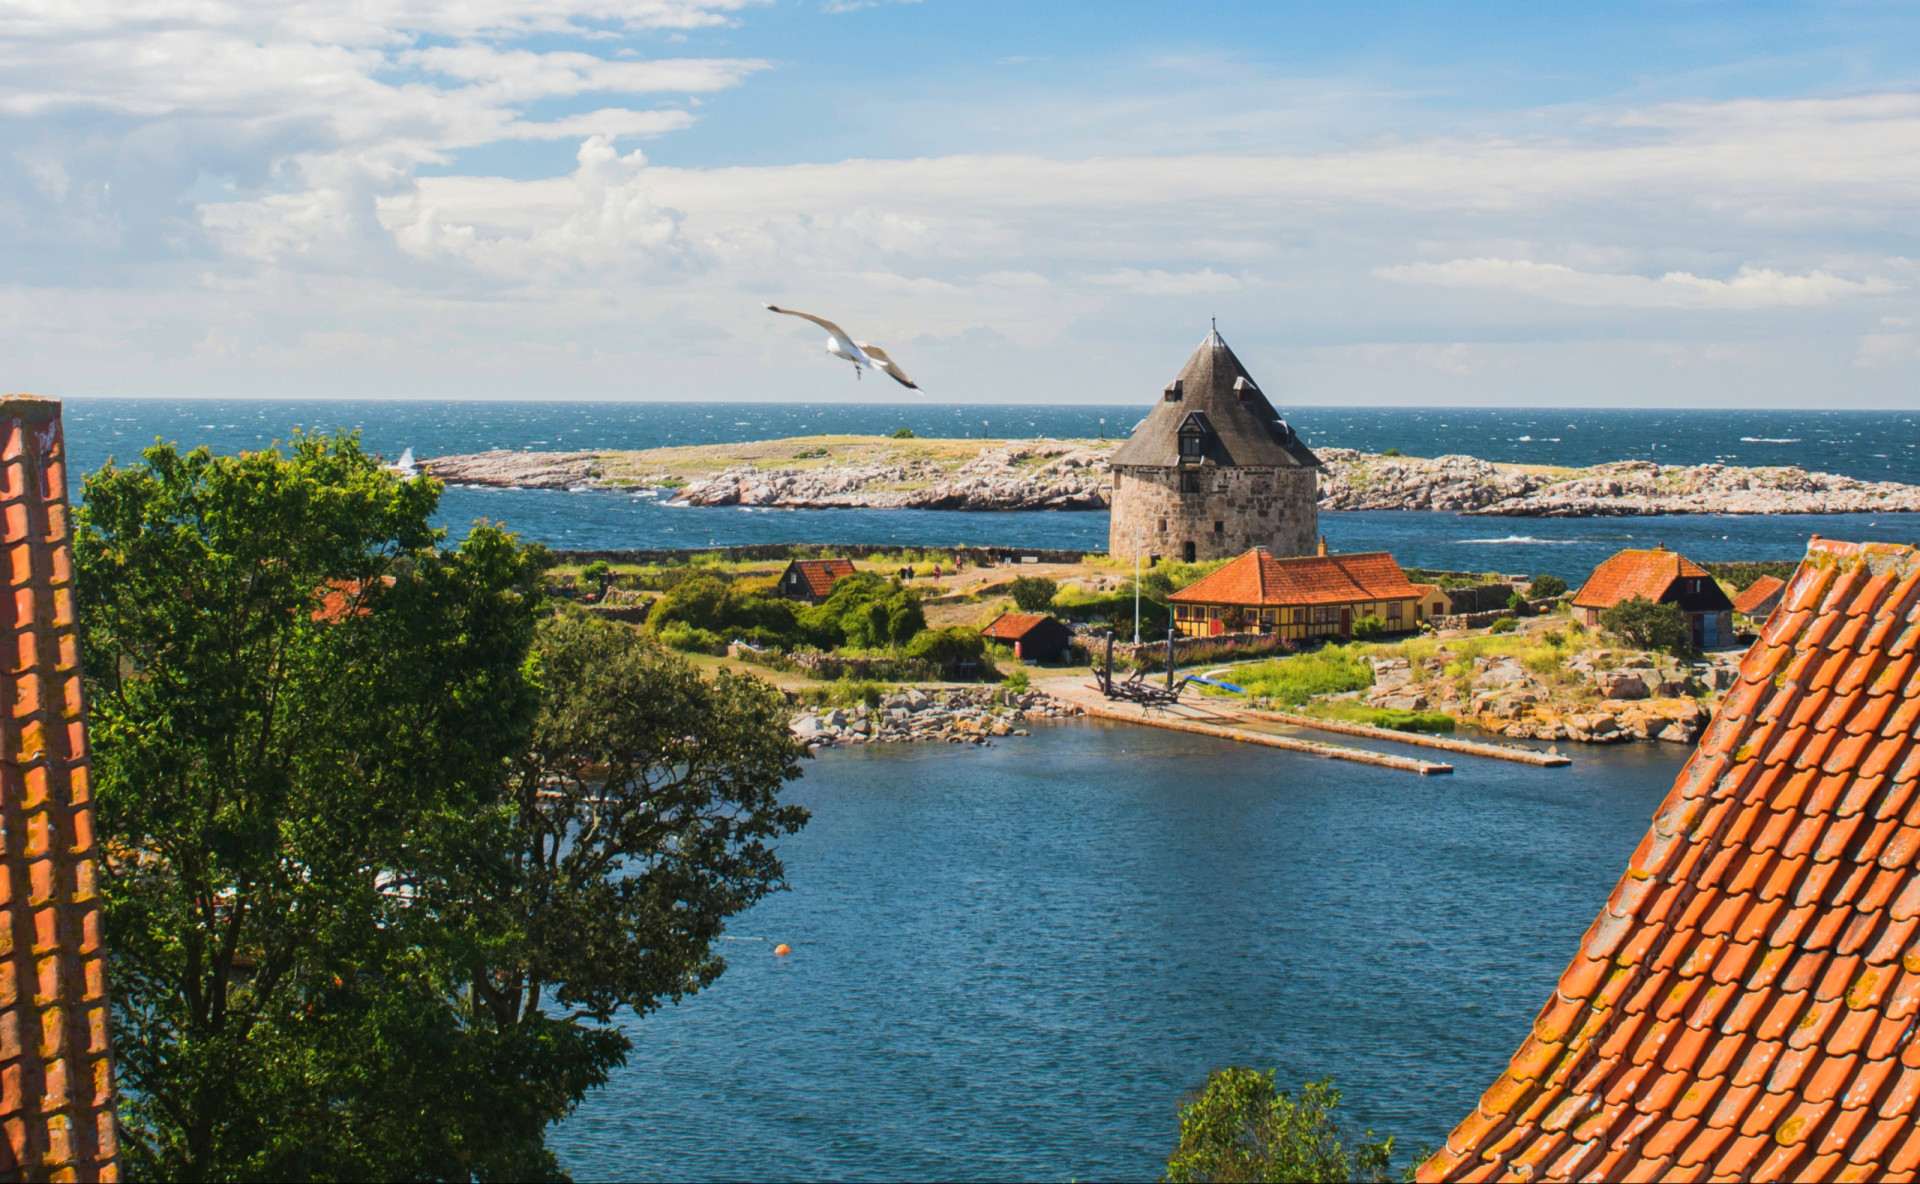 <p>Si vous aimez marcher et pédaler, alors vous vous devez de faire un détour par Bornholm une île de la mer Baltique qui vous promet paix et solitude. L'étrange moulin à vent et les ruines médiévales du château de Hammershus vous raviront également.</p><p><a href="https://www.msn.com/fr-fr/community/channel/vid-7xx8mnucu55yw63we9va2gwr7uihbxwc68fxqp25x6tg4ftibpra?cvid=94631541bc0f4f89bfd59158d696ad7e">Suivez-nous et accédez tous les jours à du contenu exclusif</a></p>